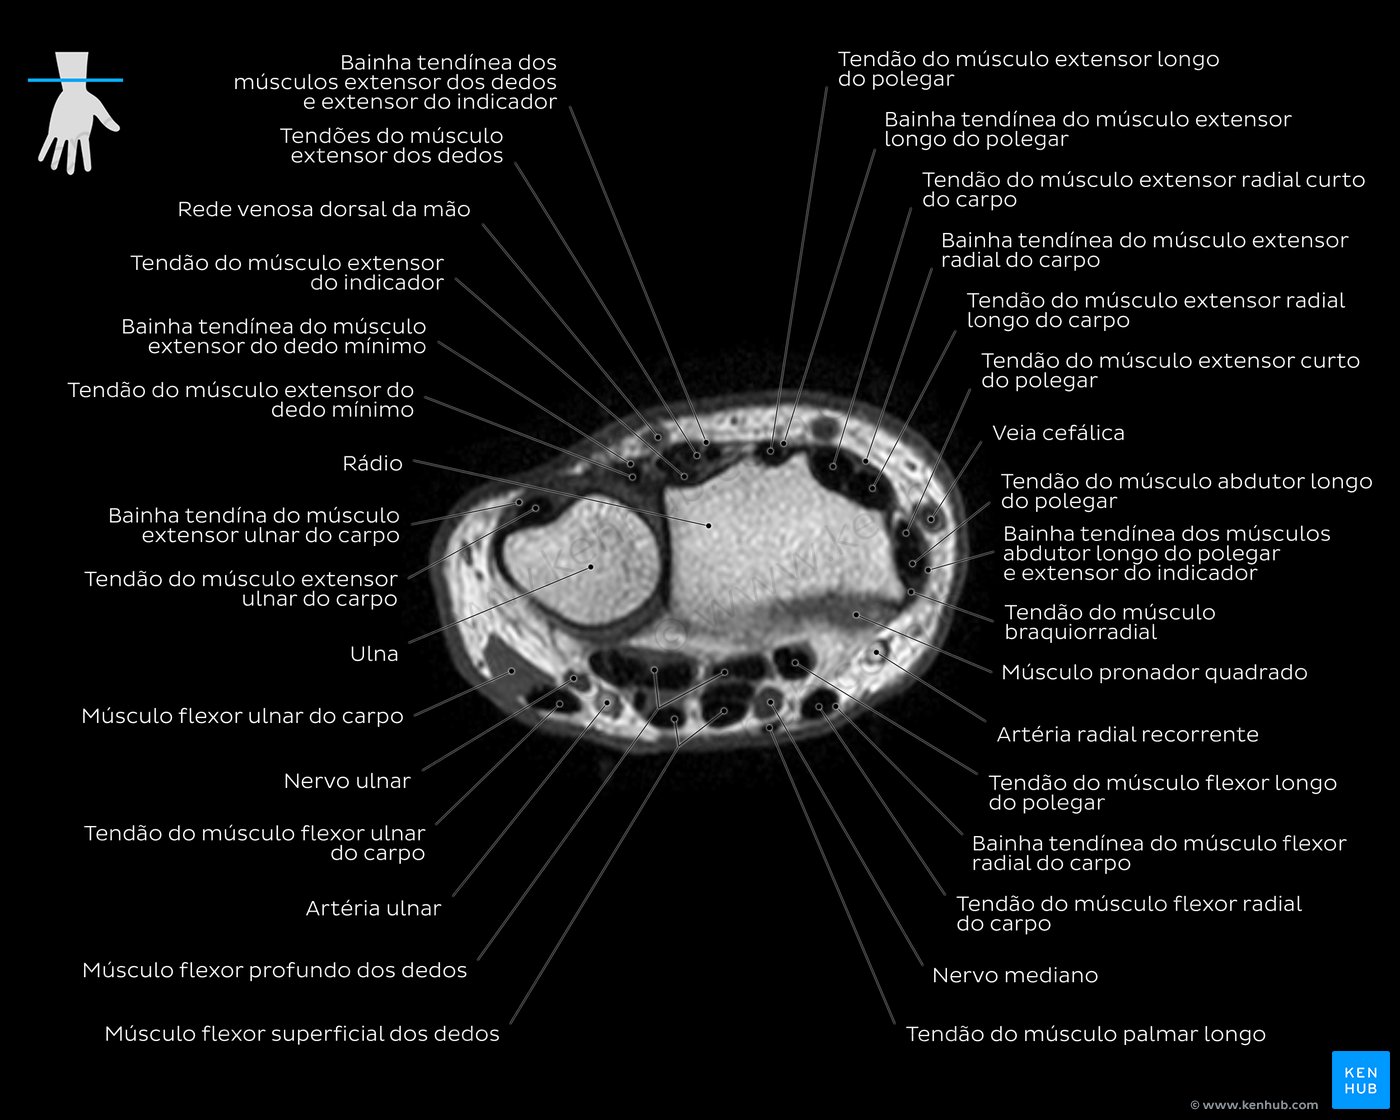 Imagem de ressonância magnética ponderada em T1 ao nível do tendão do extensor ulnar do carpo